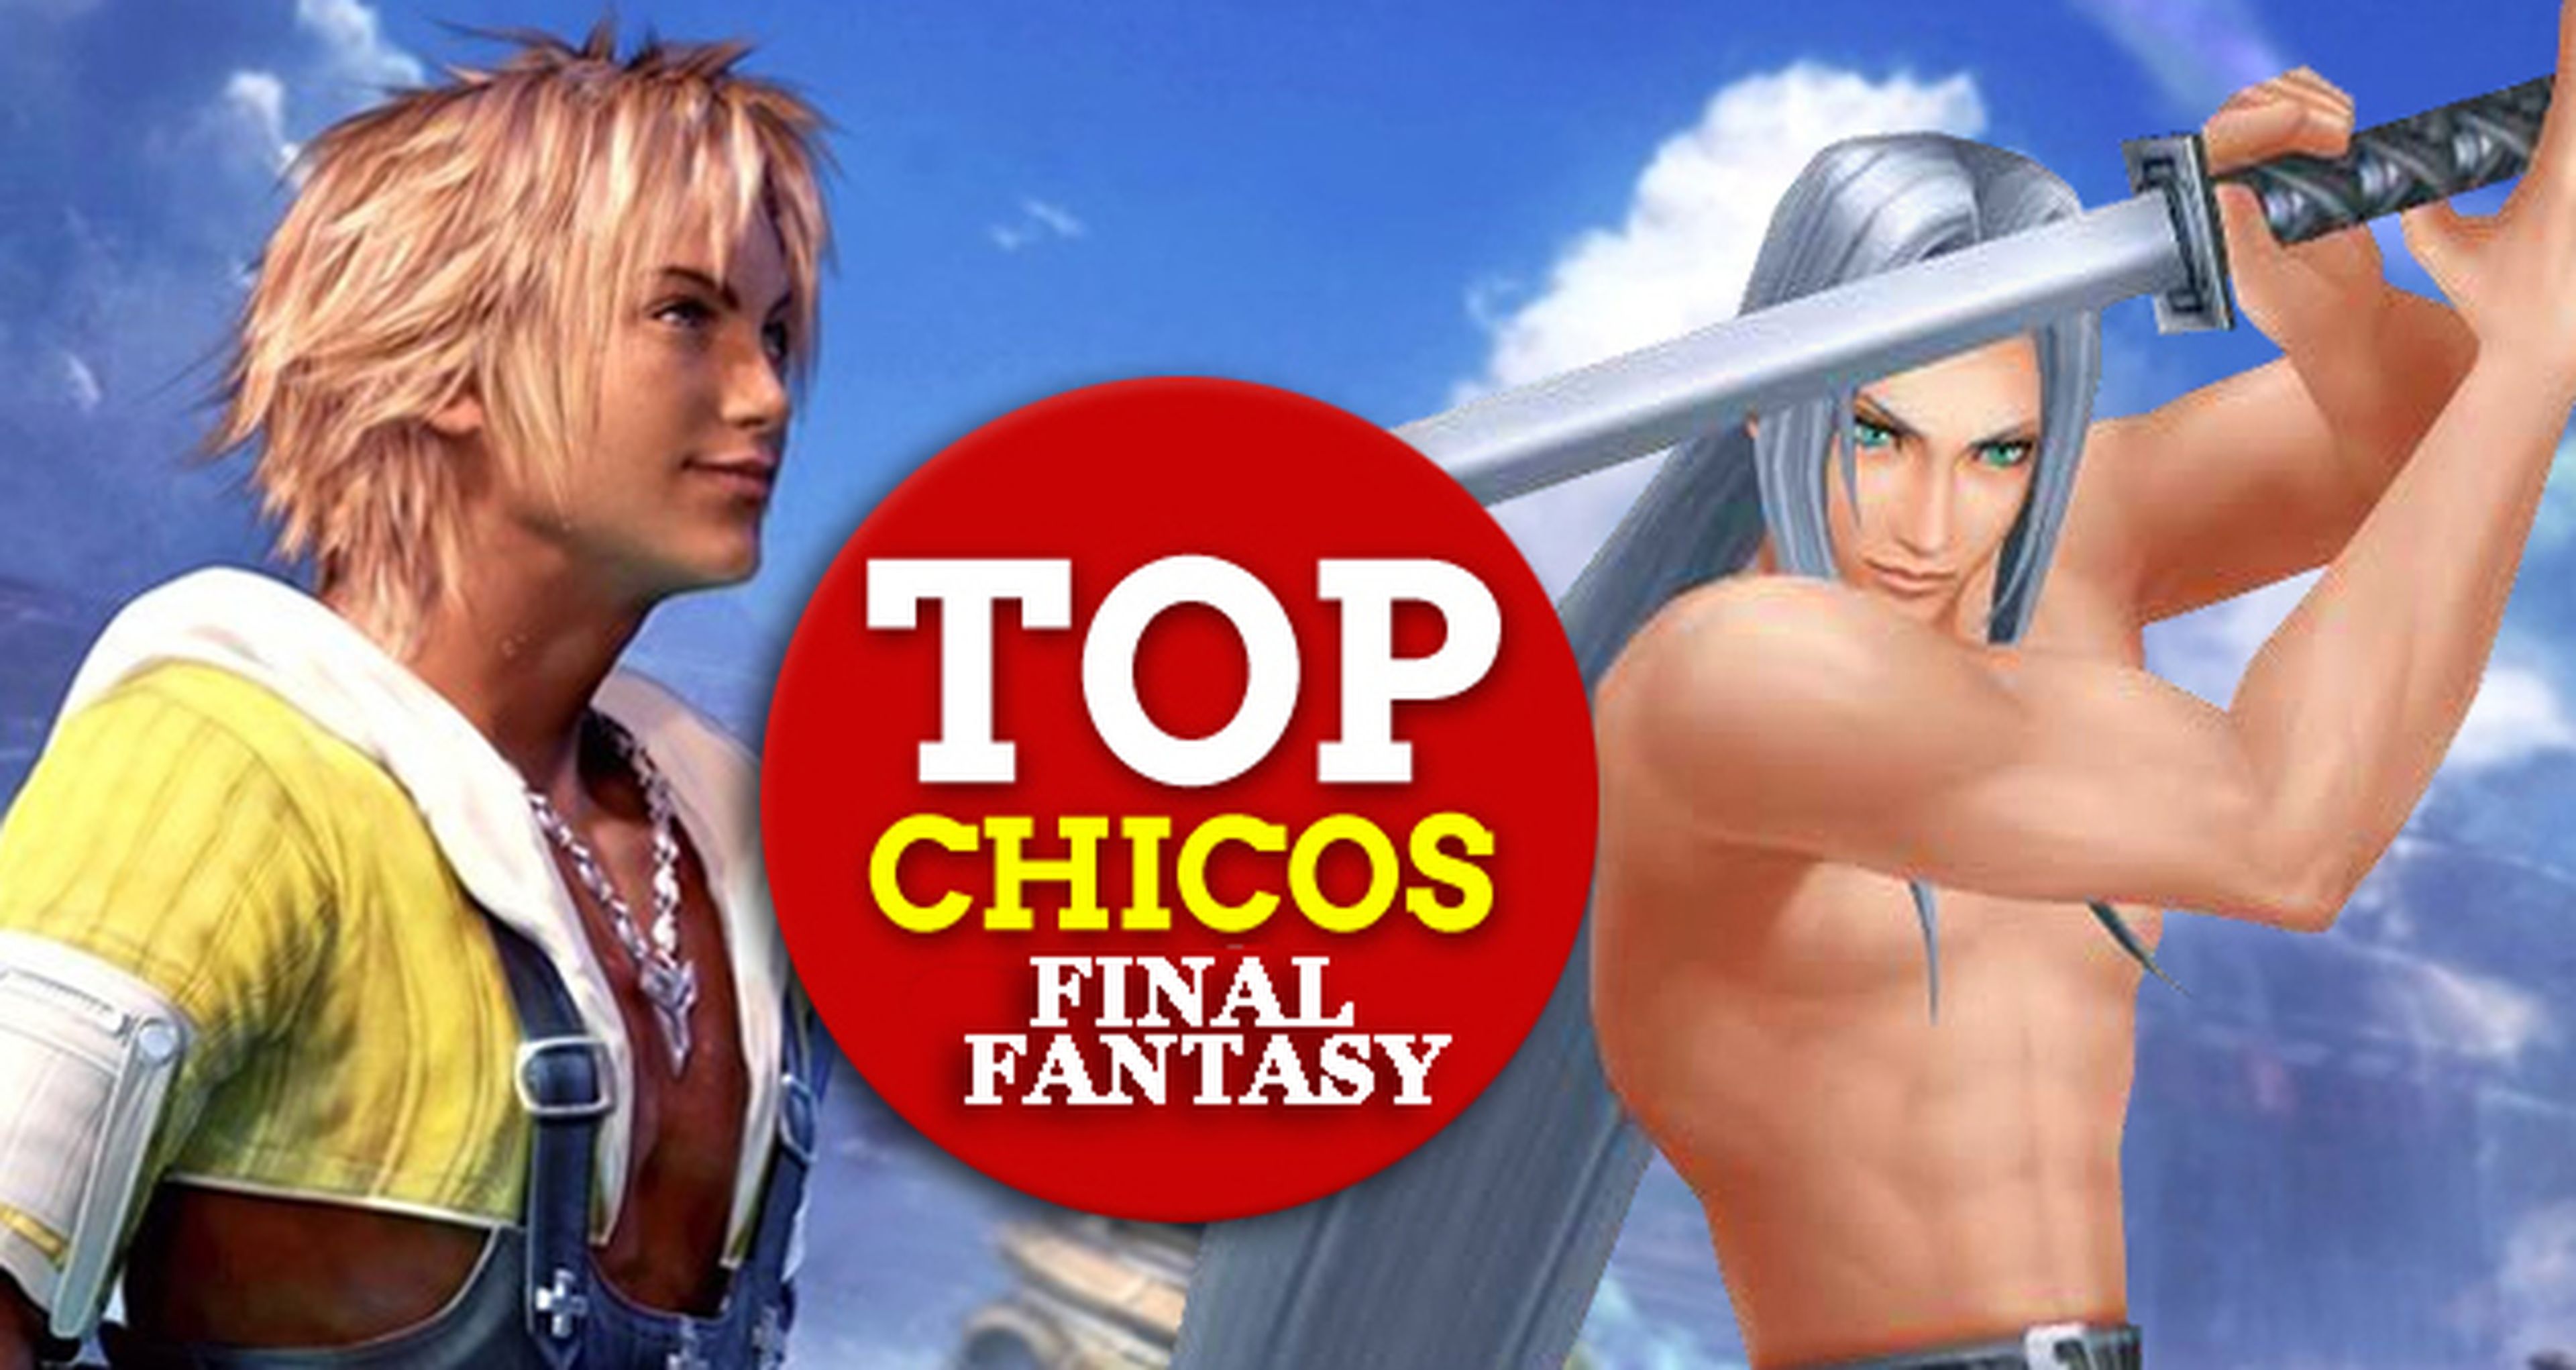 Top chicos Final Fantasy